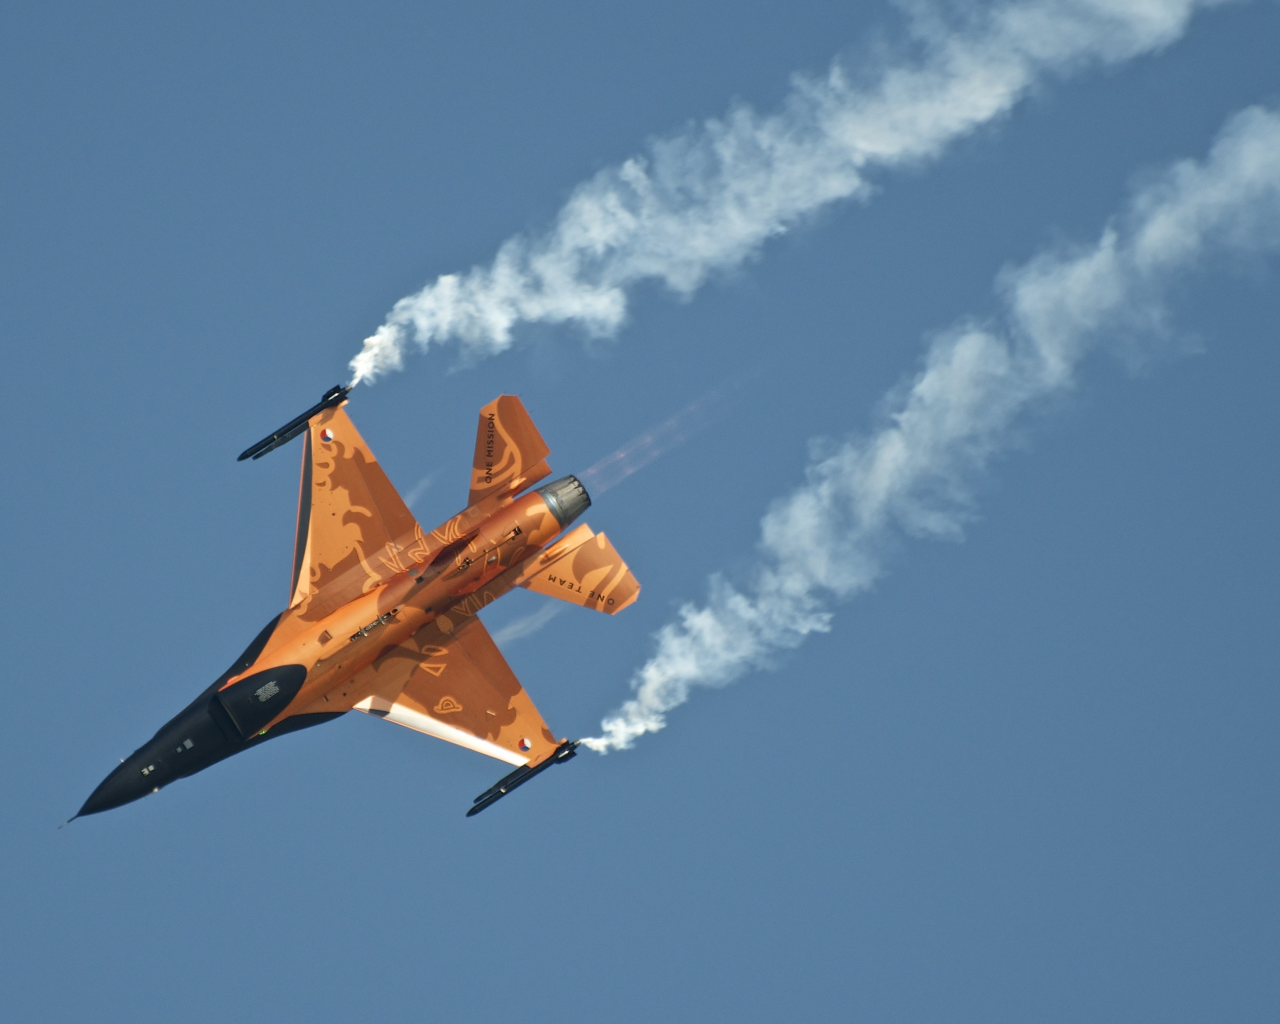  небо, вираж, нидерланды, самолет, дым, f-16 am, истребитель